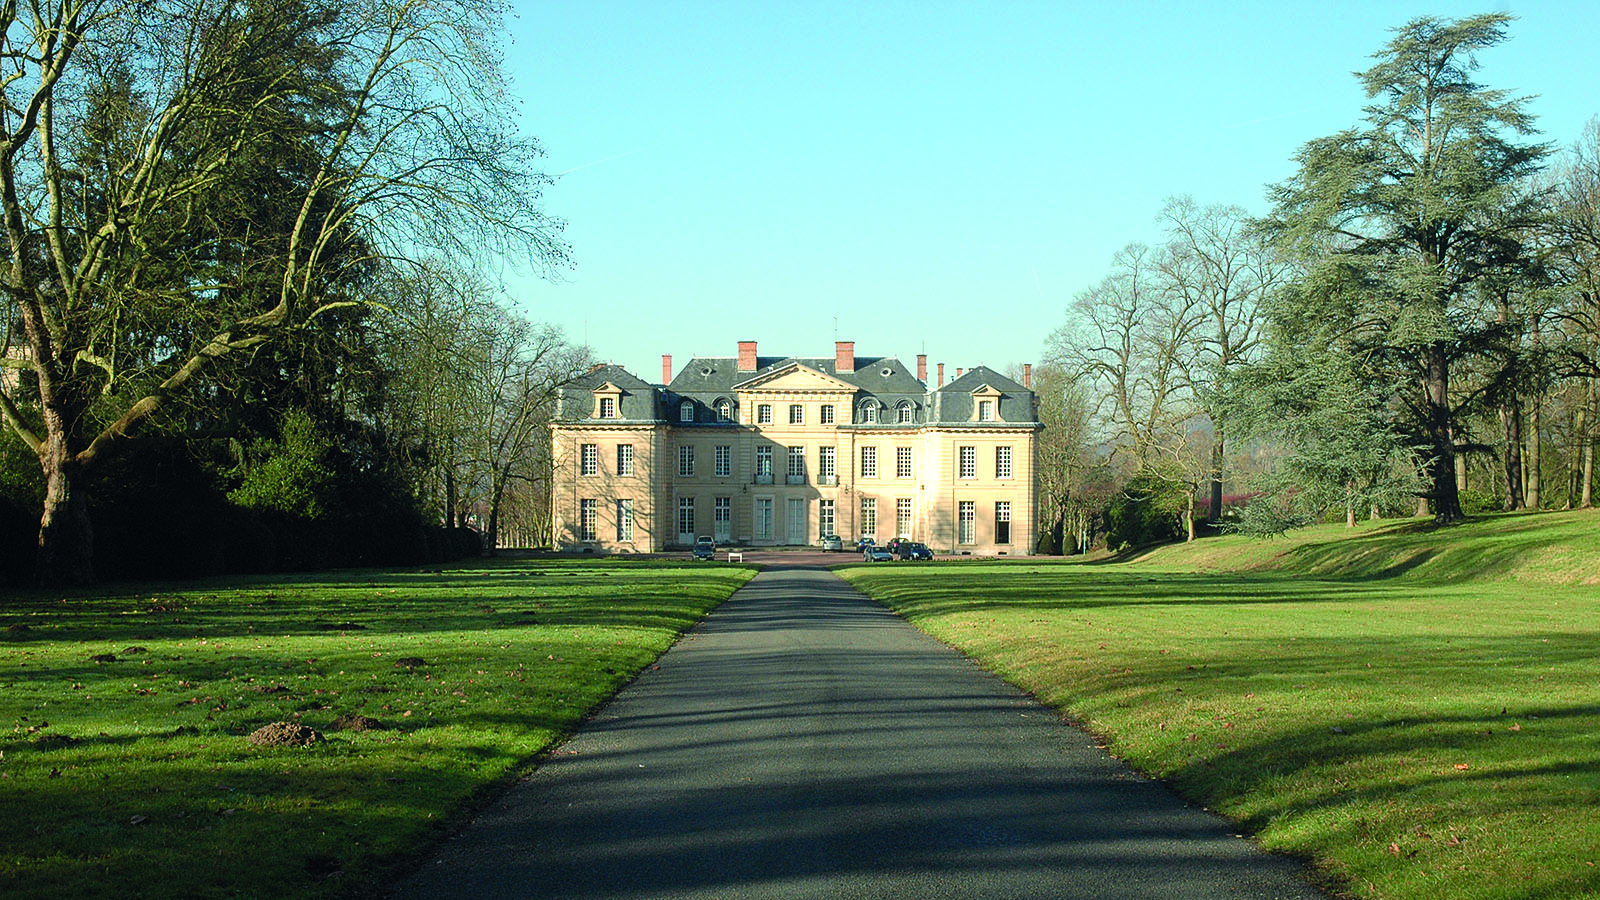 Château du CNRS - photographie